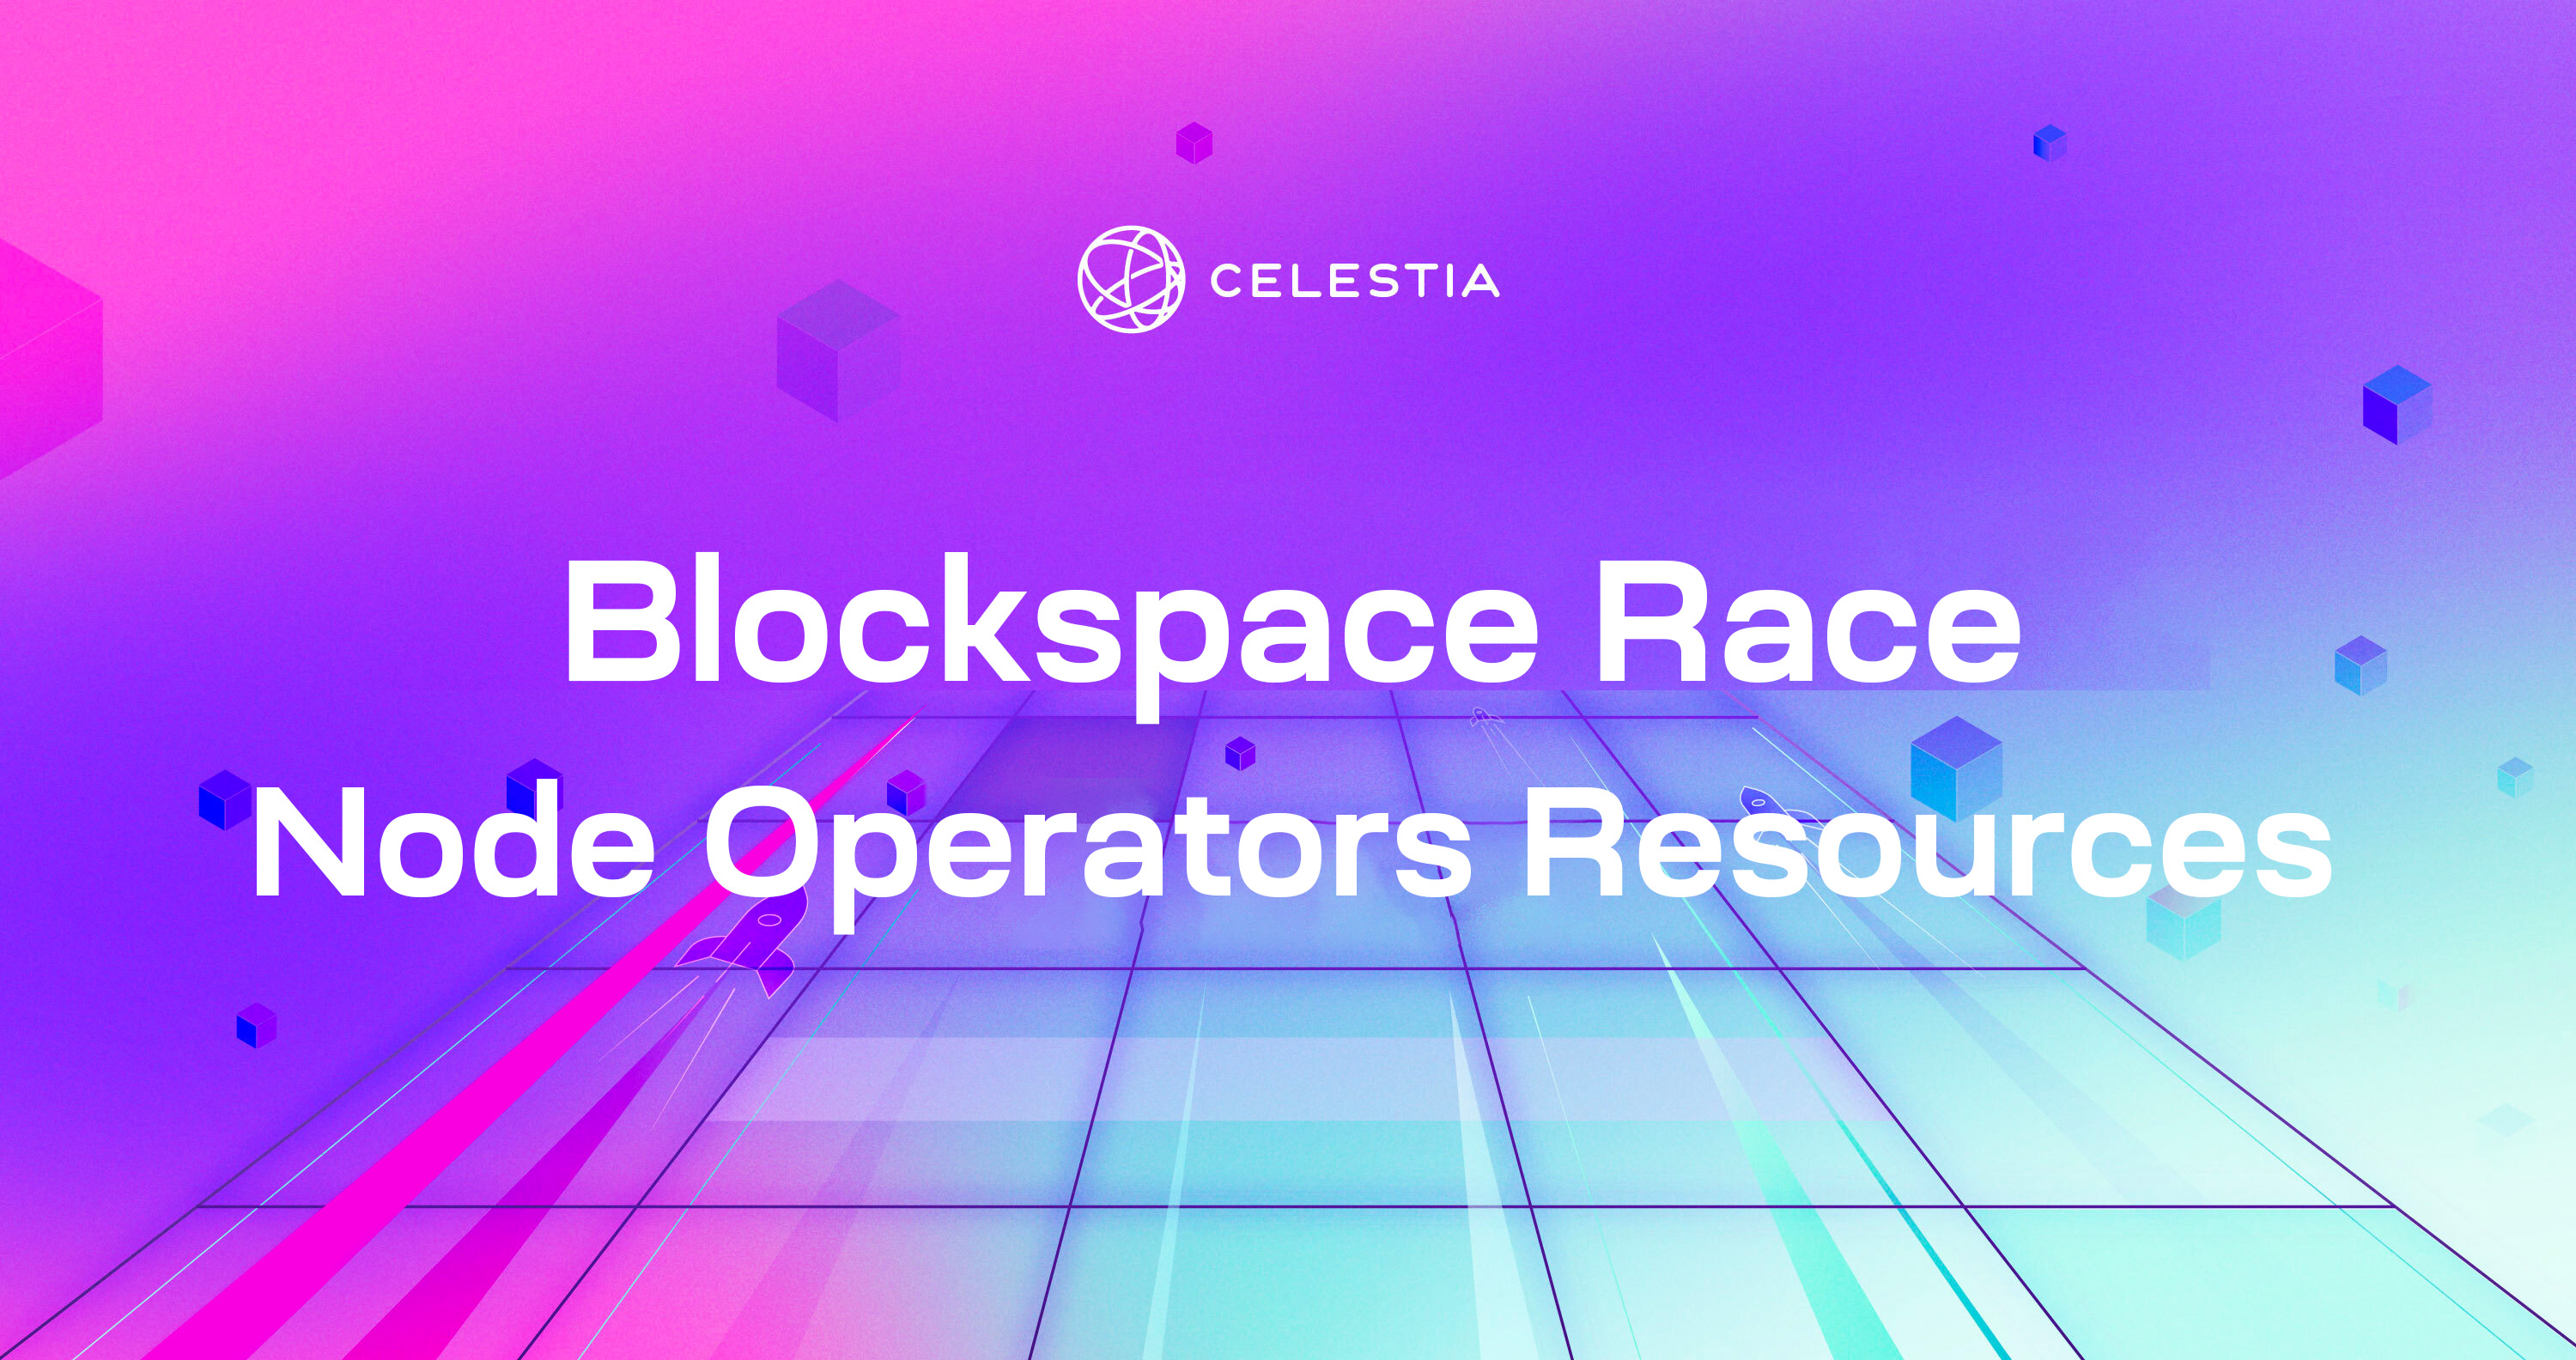 Celestia Blockspace Race Node Operators Resources